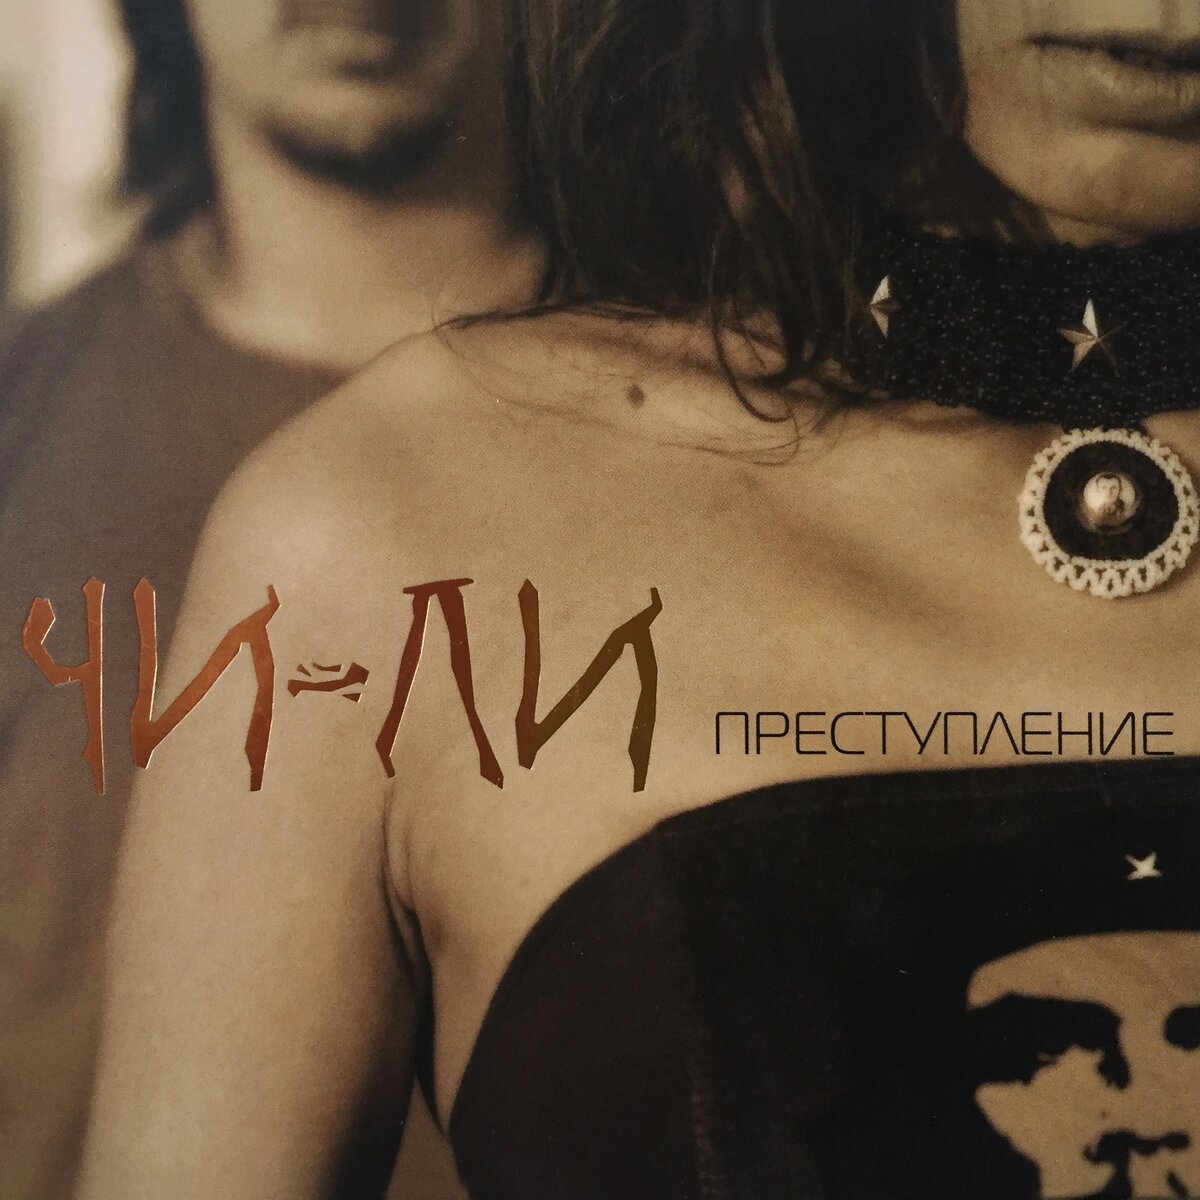 Обложка альбома "Преступление" российской группы Чи-Ли